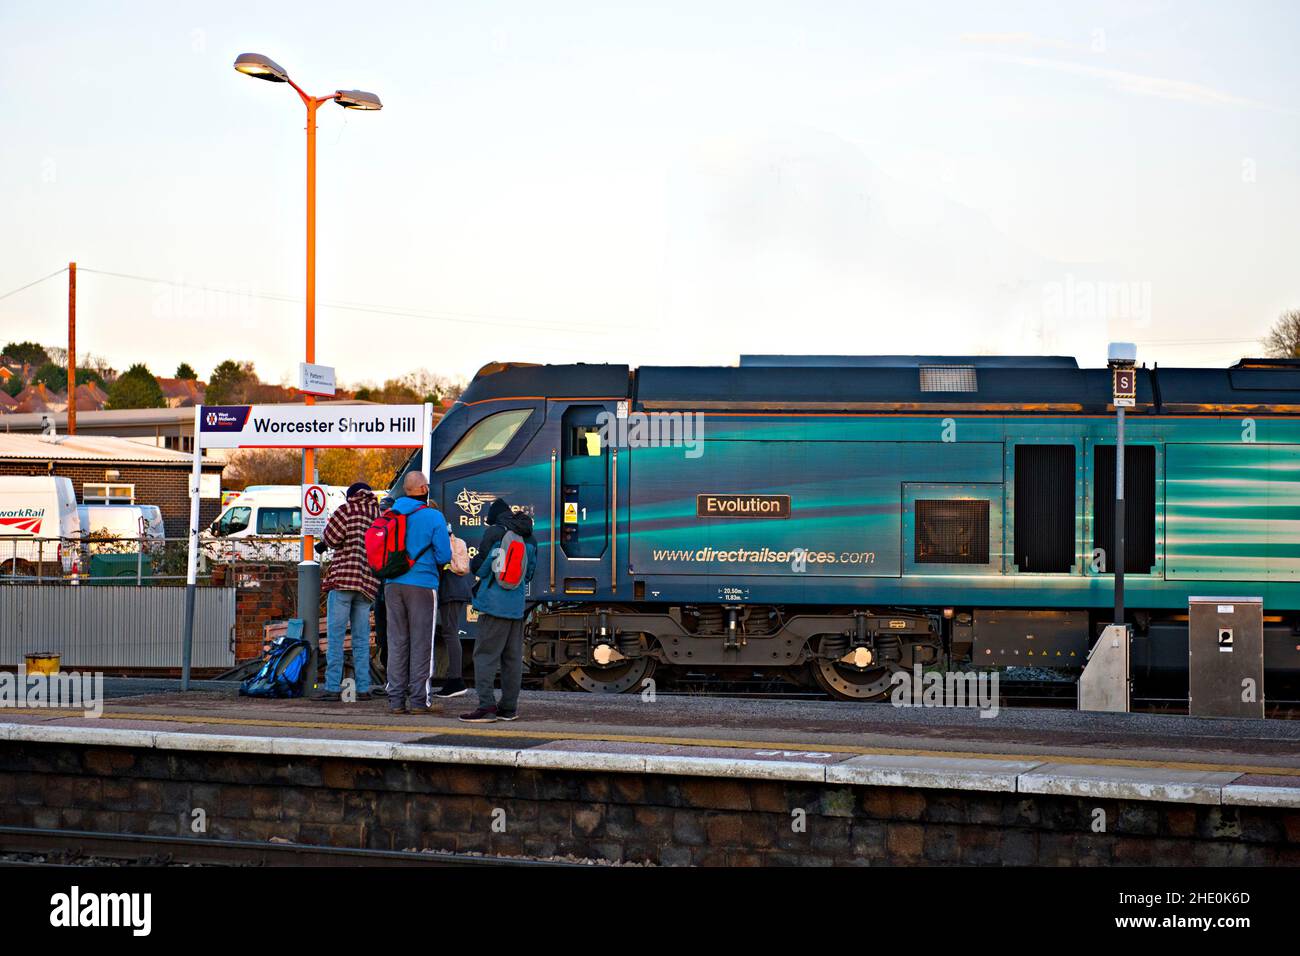 La locomotive électrique diesel « Evolution » de classe 88 de Direct Rail Services attend un train de marchandises à la gare de Worcester Shrub Hill, en Angleterre Banque D'Images